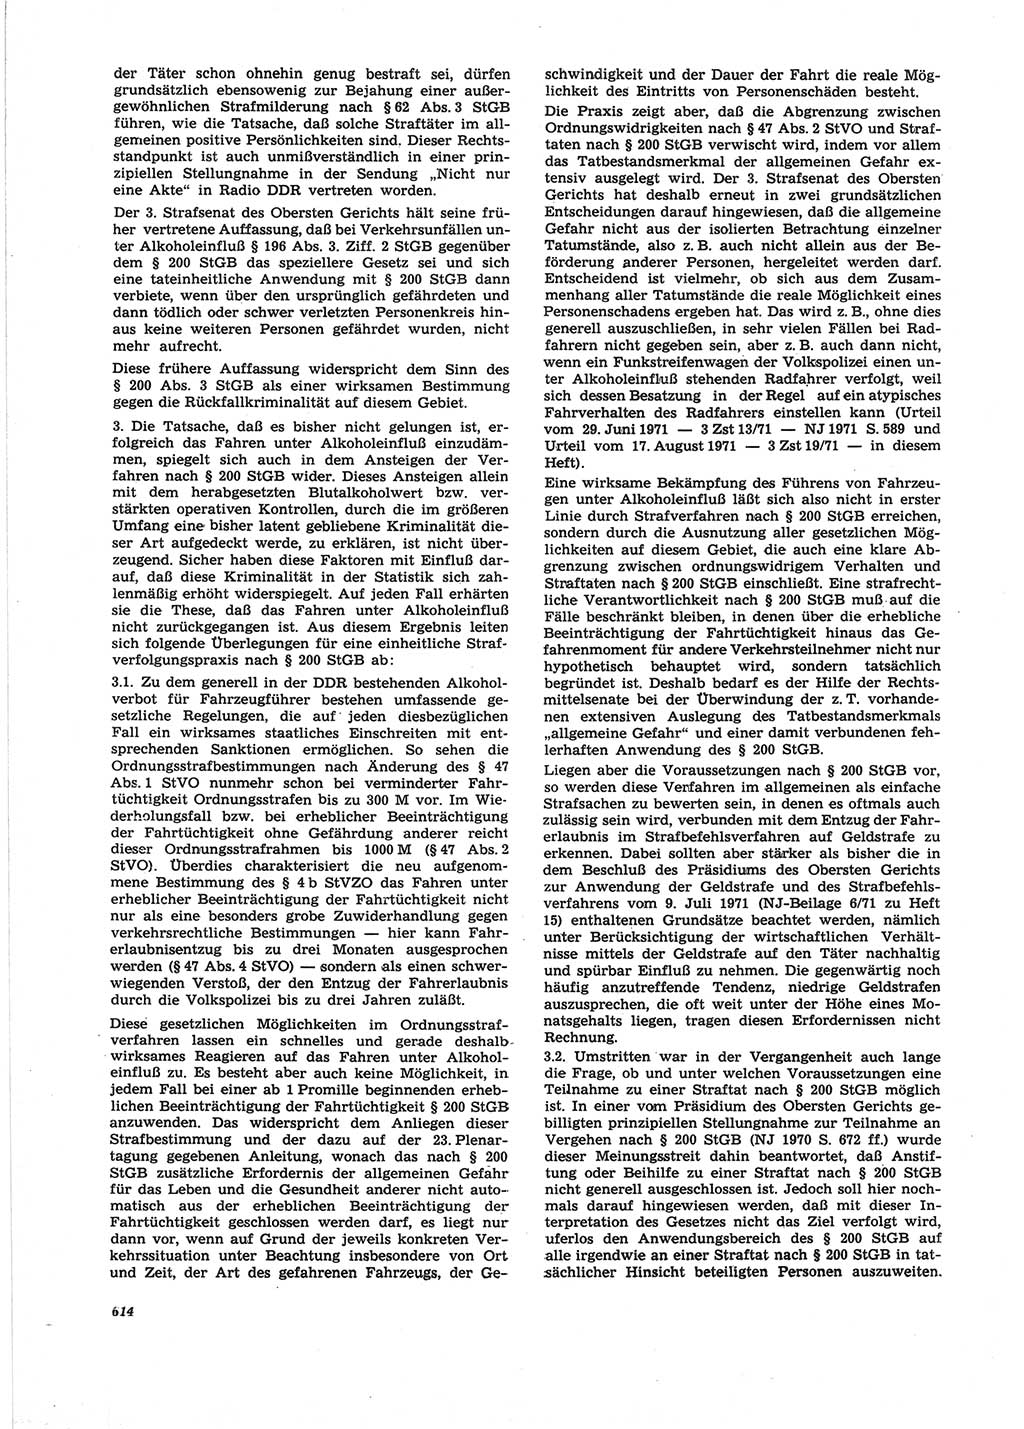 Neue Justiz (NJ), Zeitschrift für Recht und Rechtswissenschaft [Deutsche Demokratische Republik (DDR)], 25. Jahrgang 1971, Seite 614 (NJ DDR 1971, S. 614)